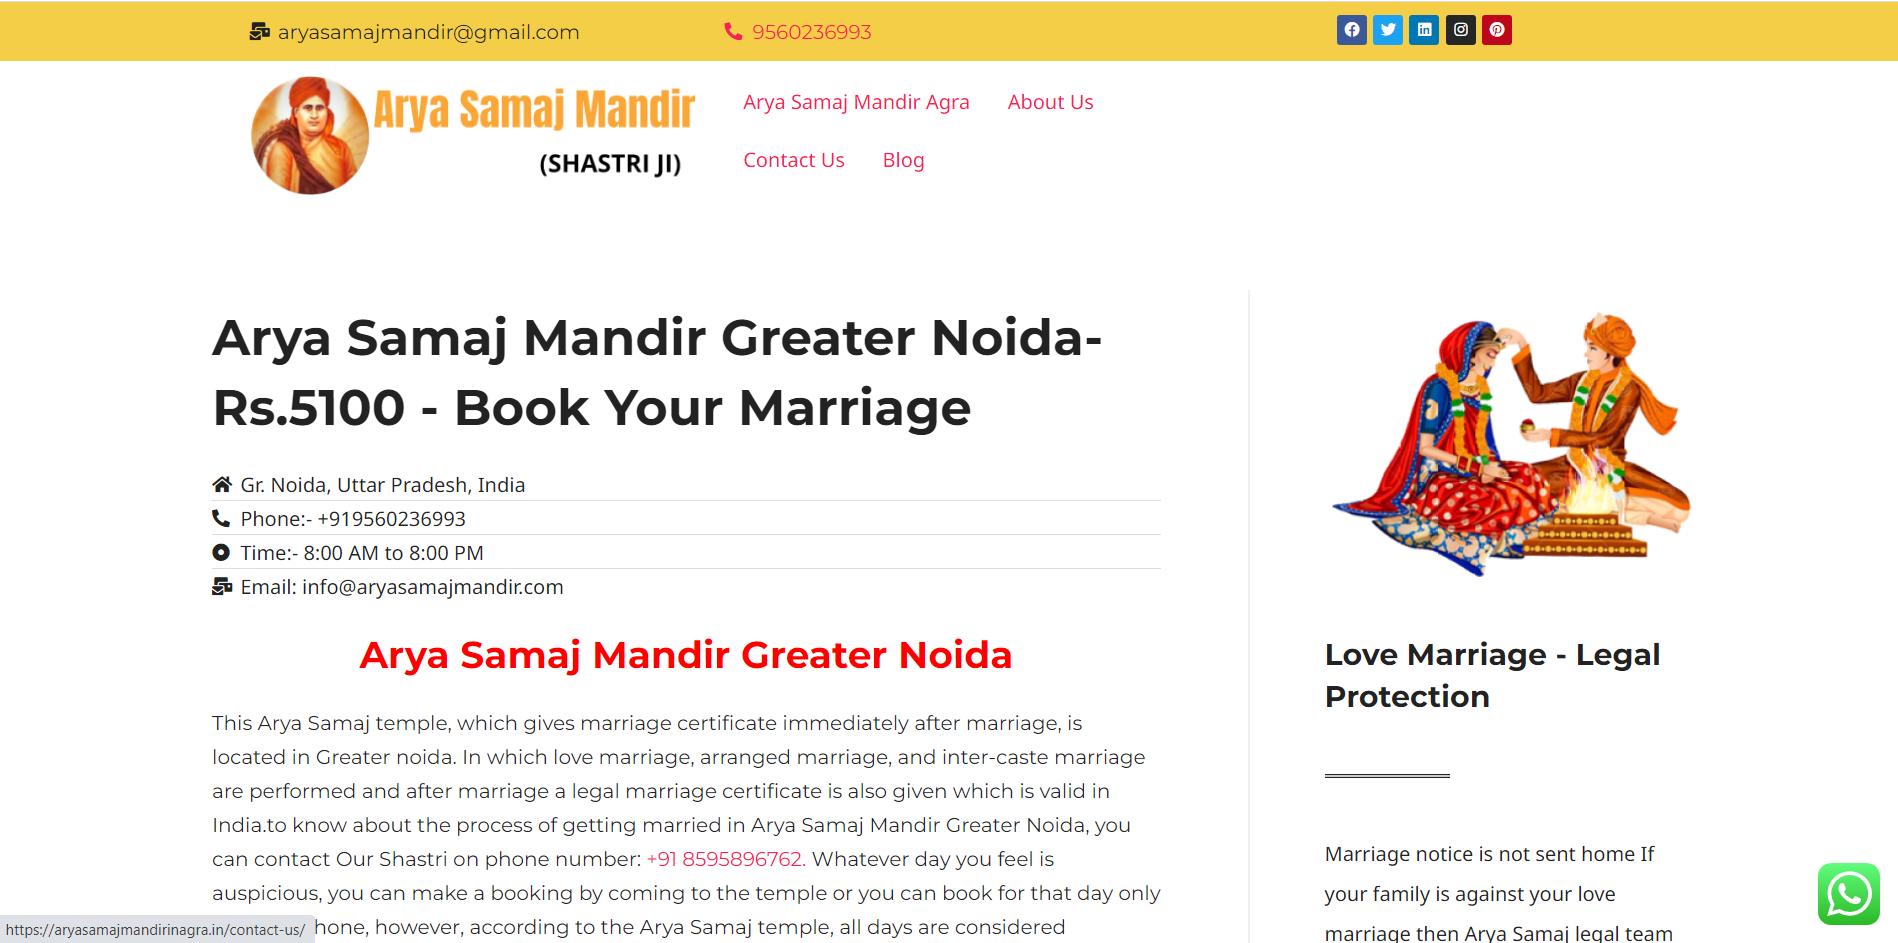 Arya Samaj Mandir Greater Noida